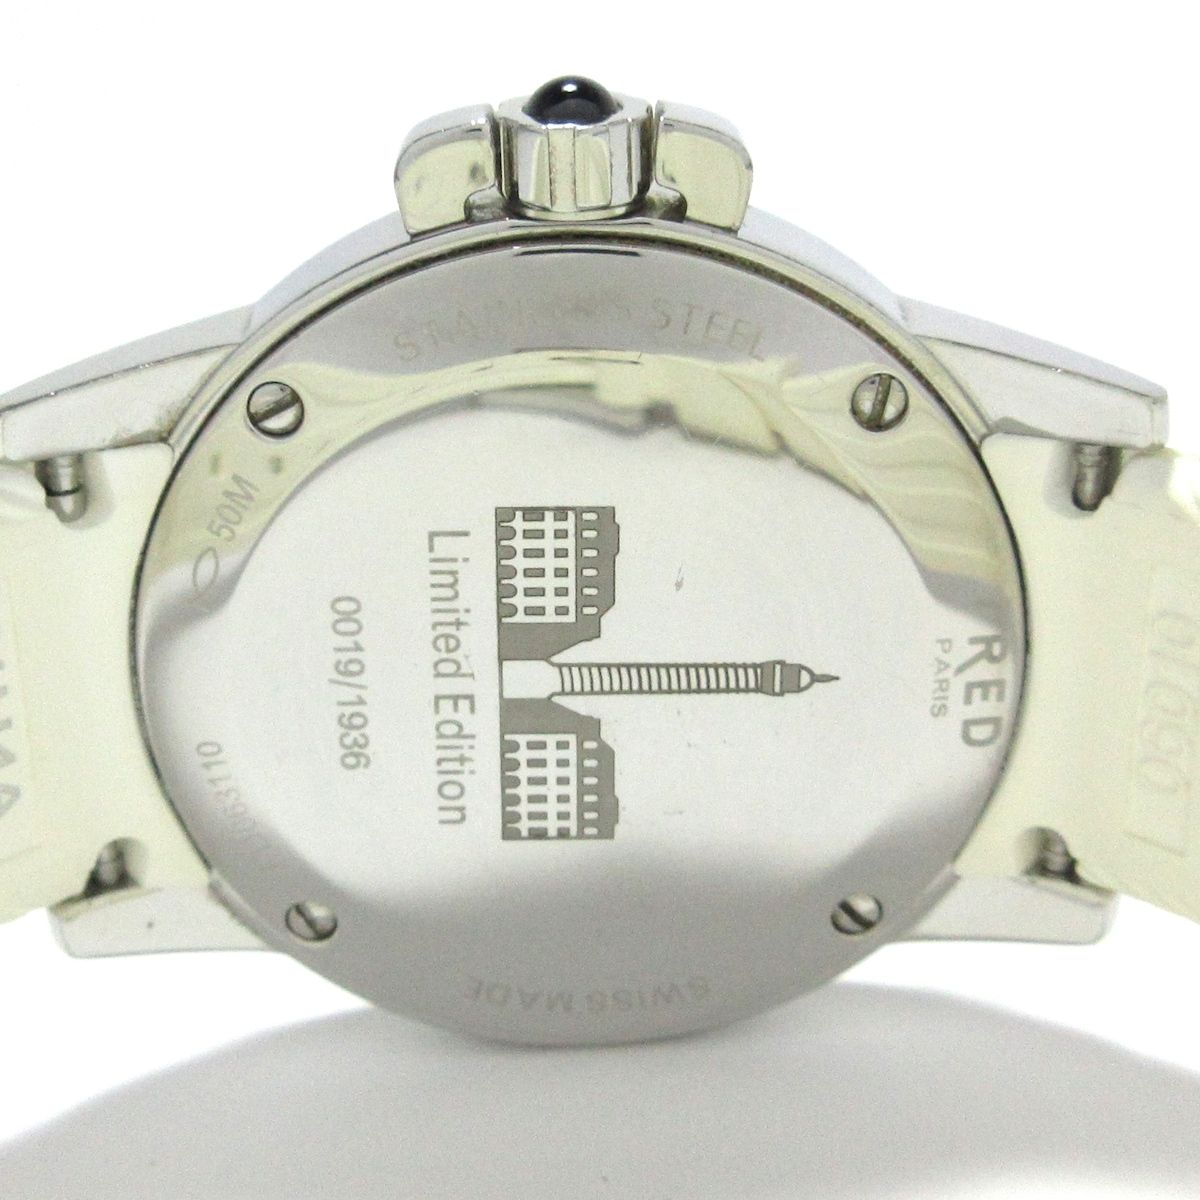 FRED(フレッド) 腕時計 グラディエーター FD063110 レディース 12Pダイヤ シェル